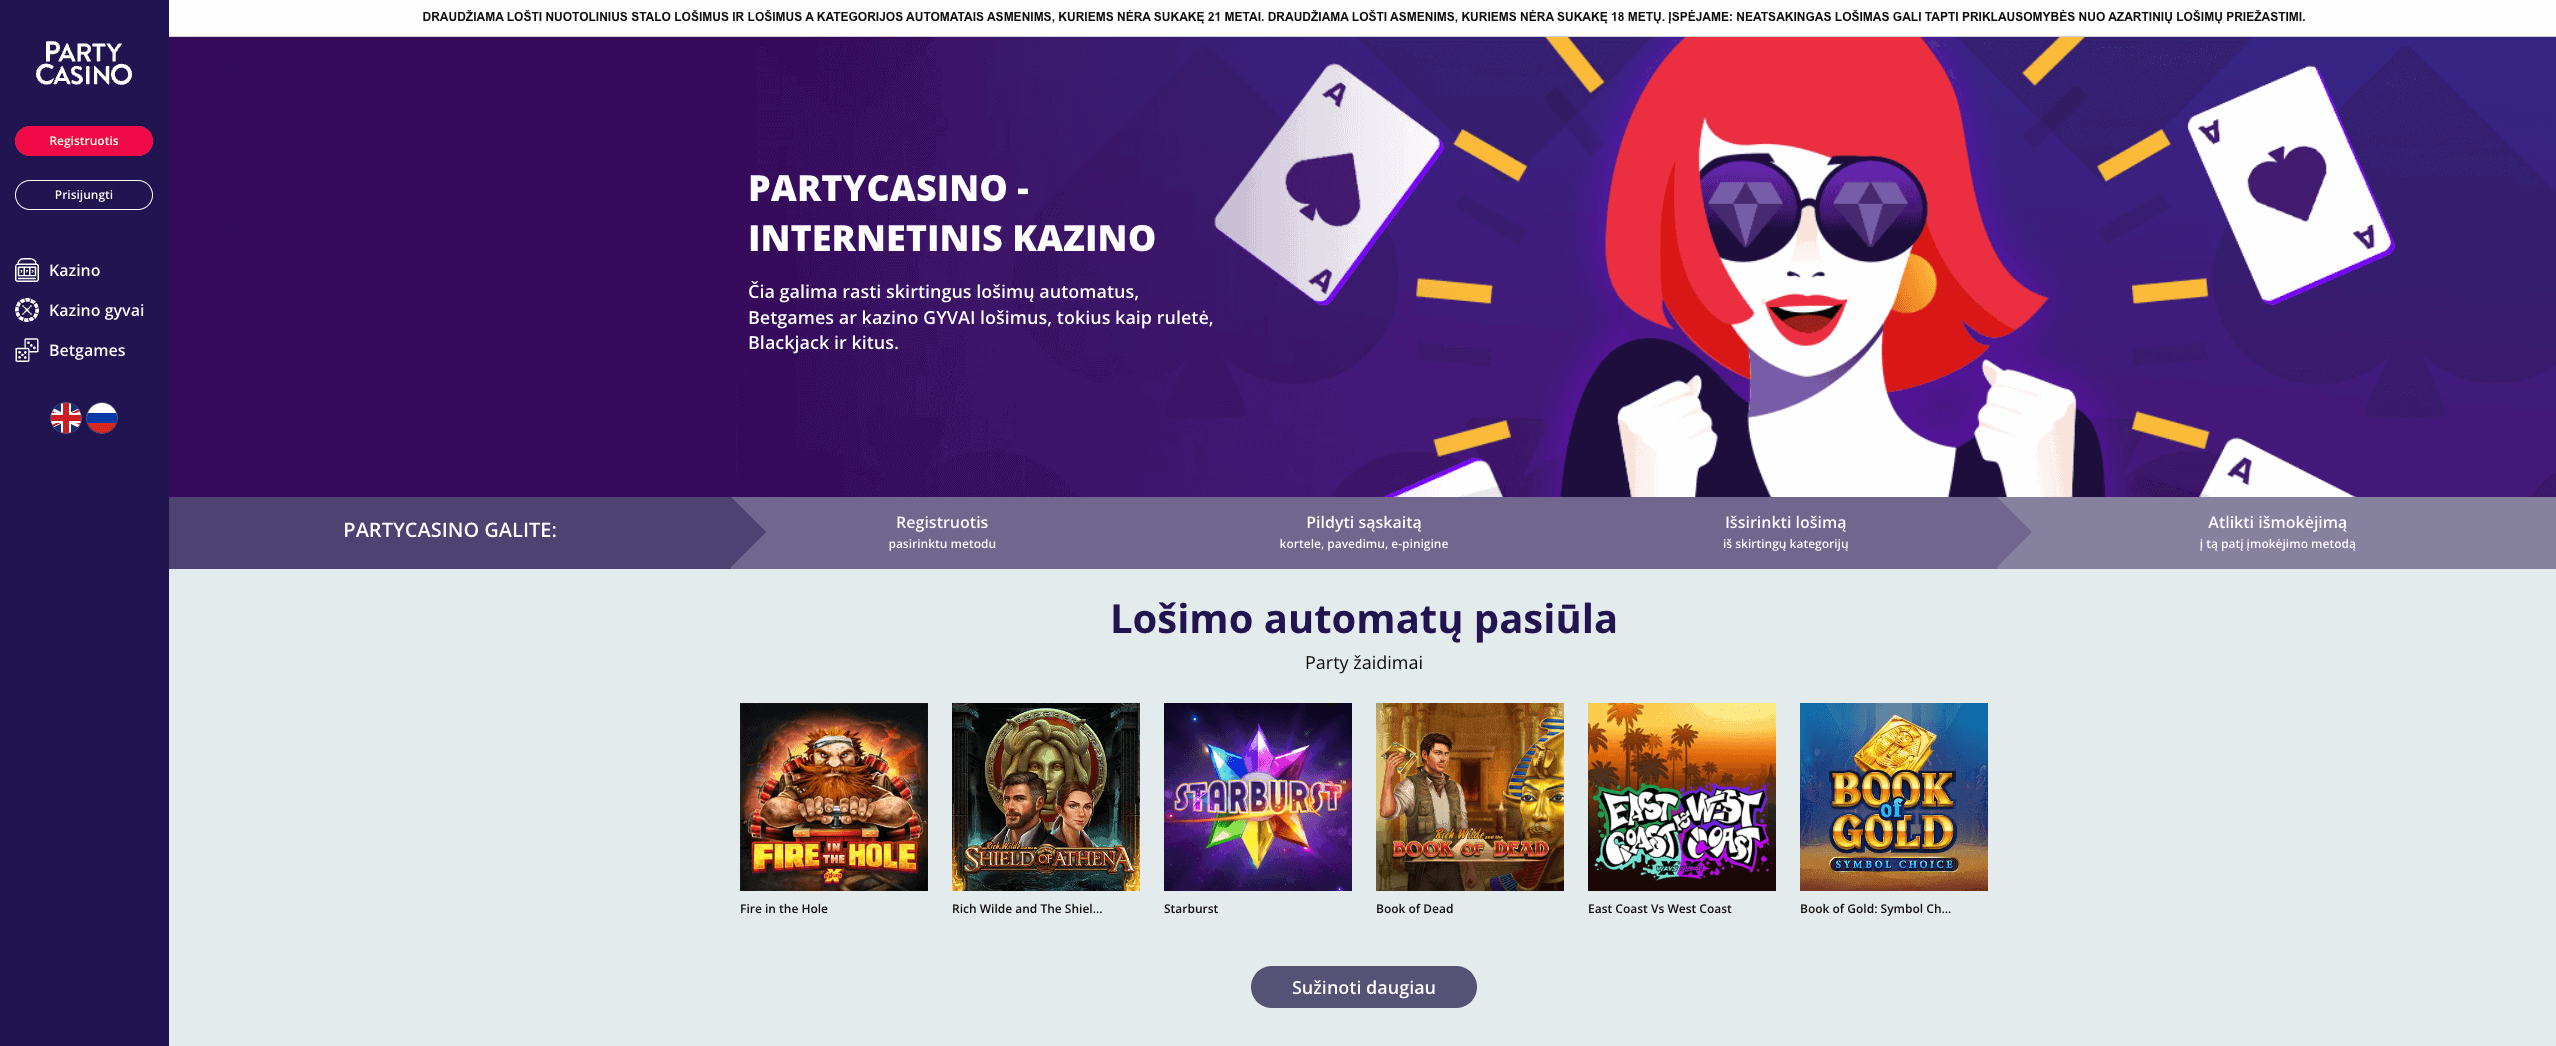 PartyCasino kazino pagrindinio puslapio vaizdas